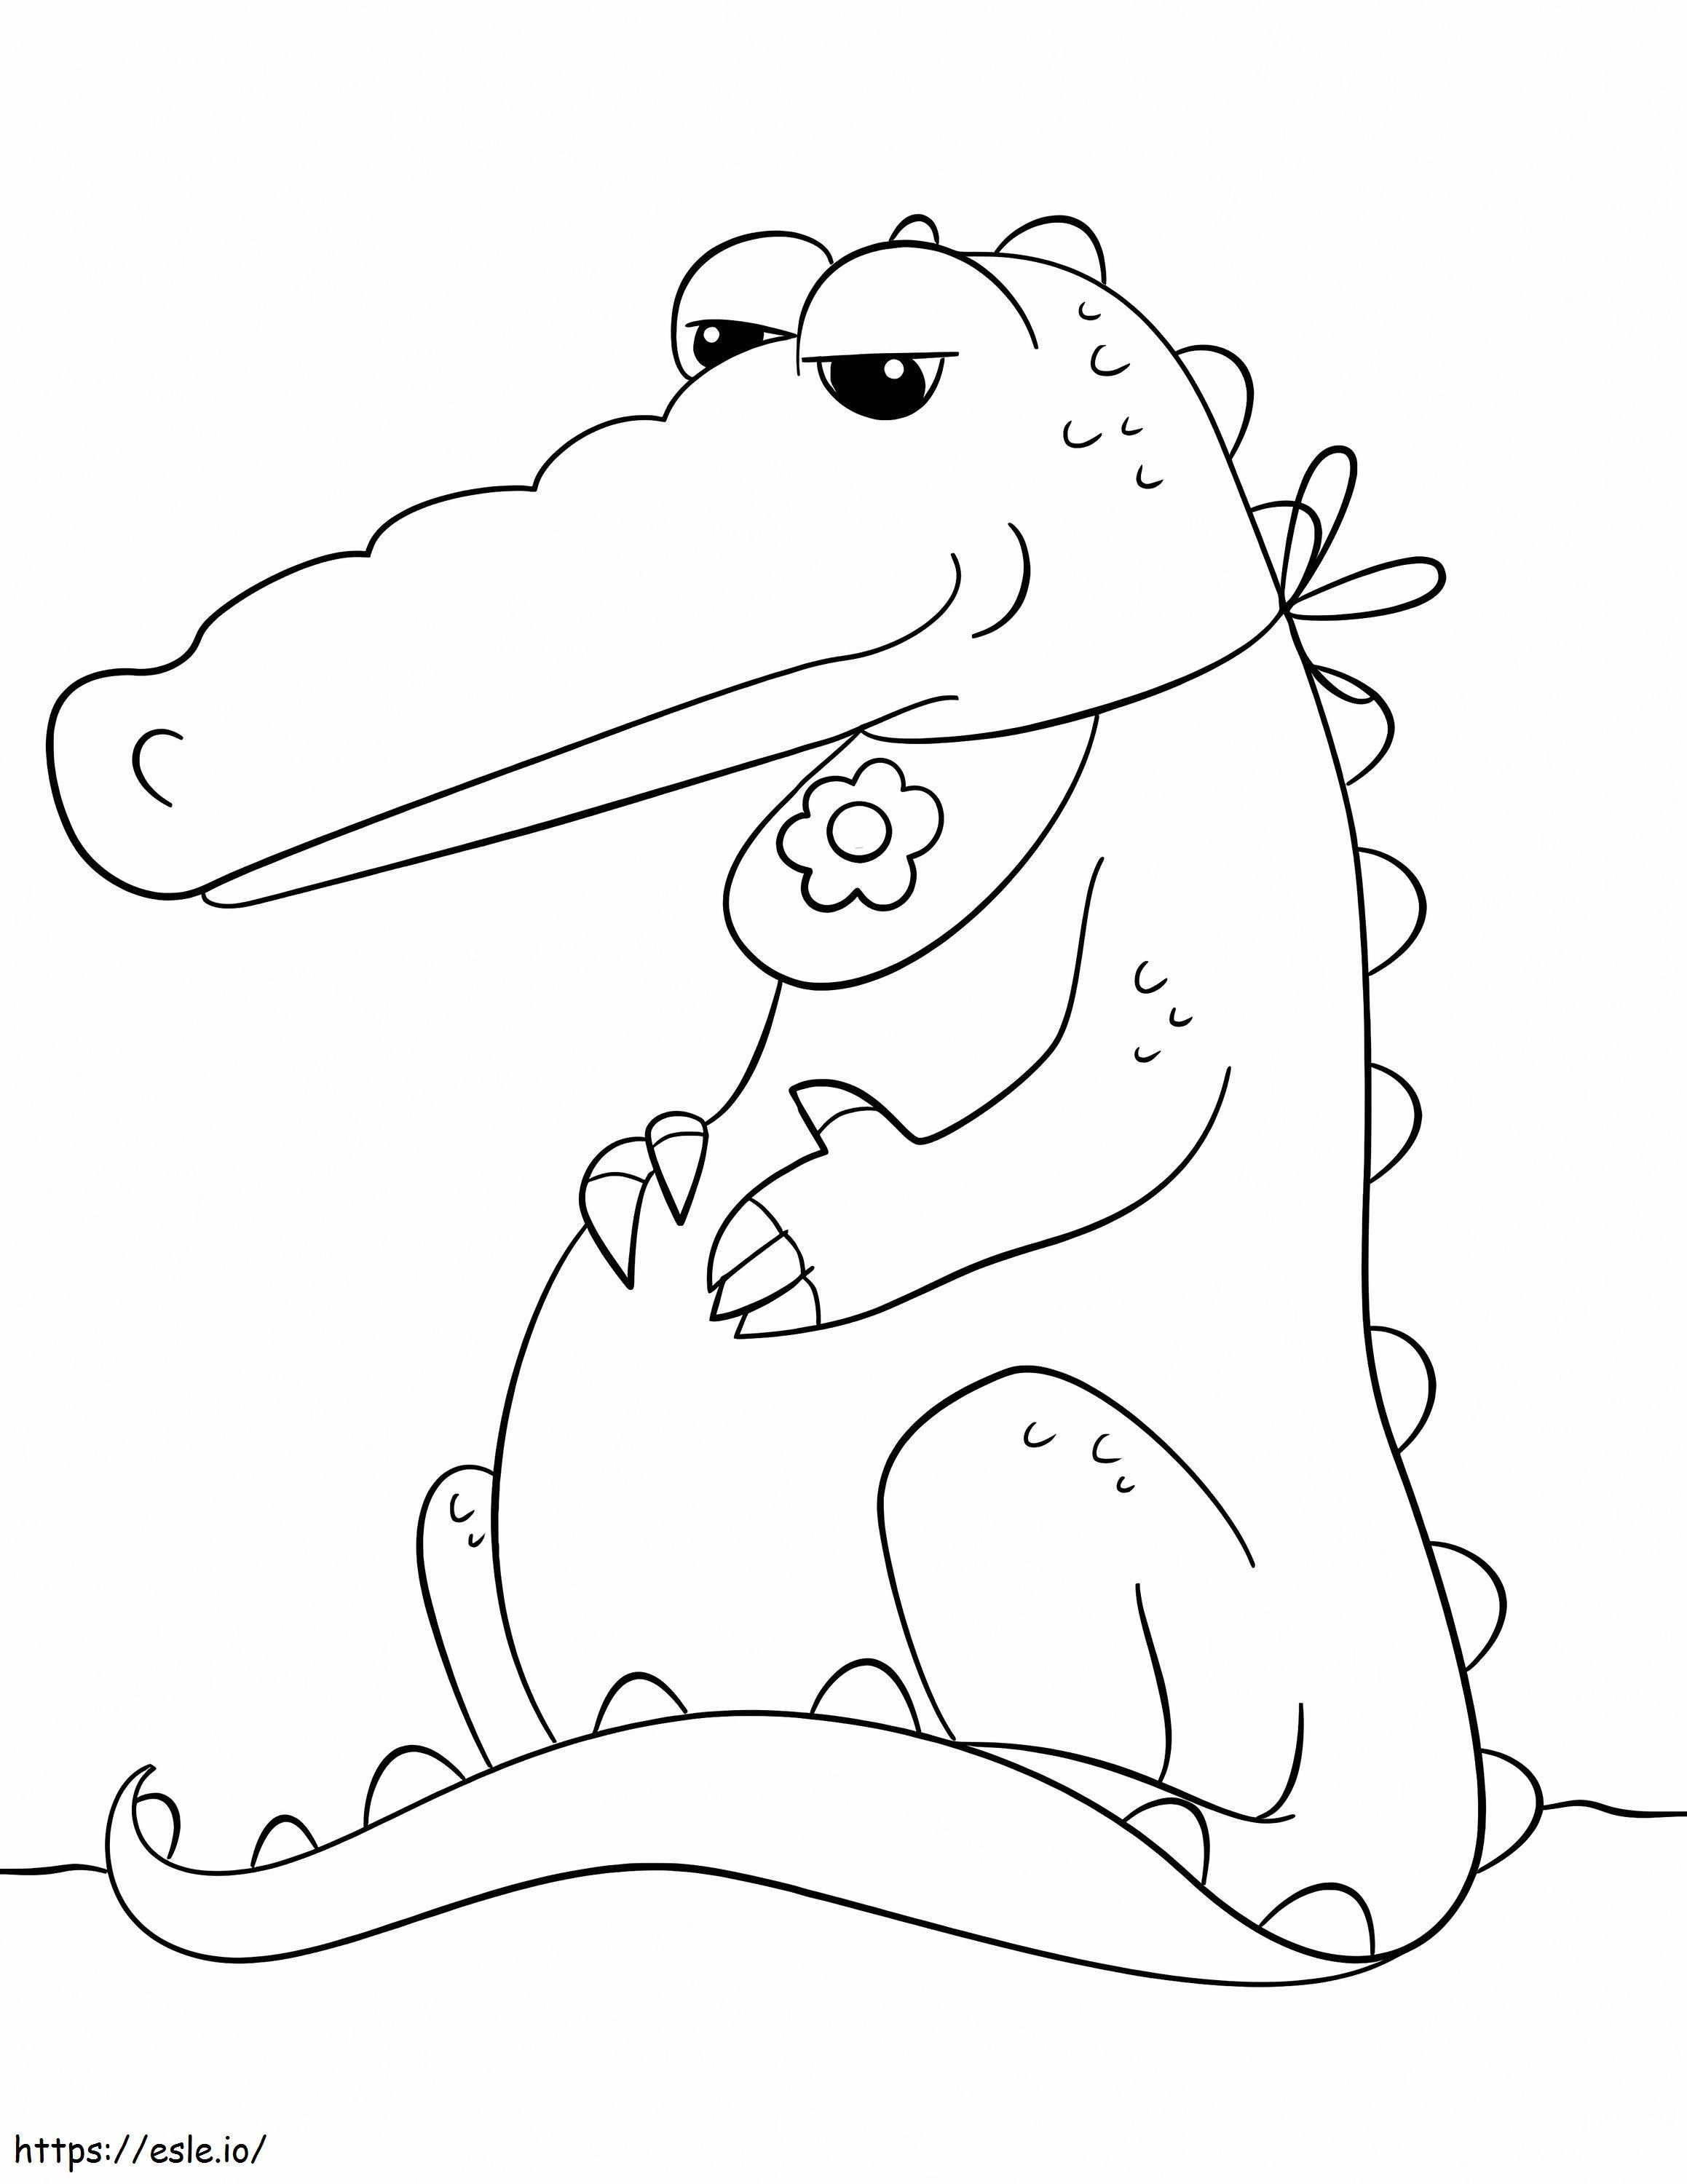 Coloriage Crocodile assis à imprimer dessin